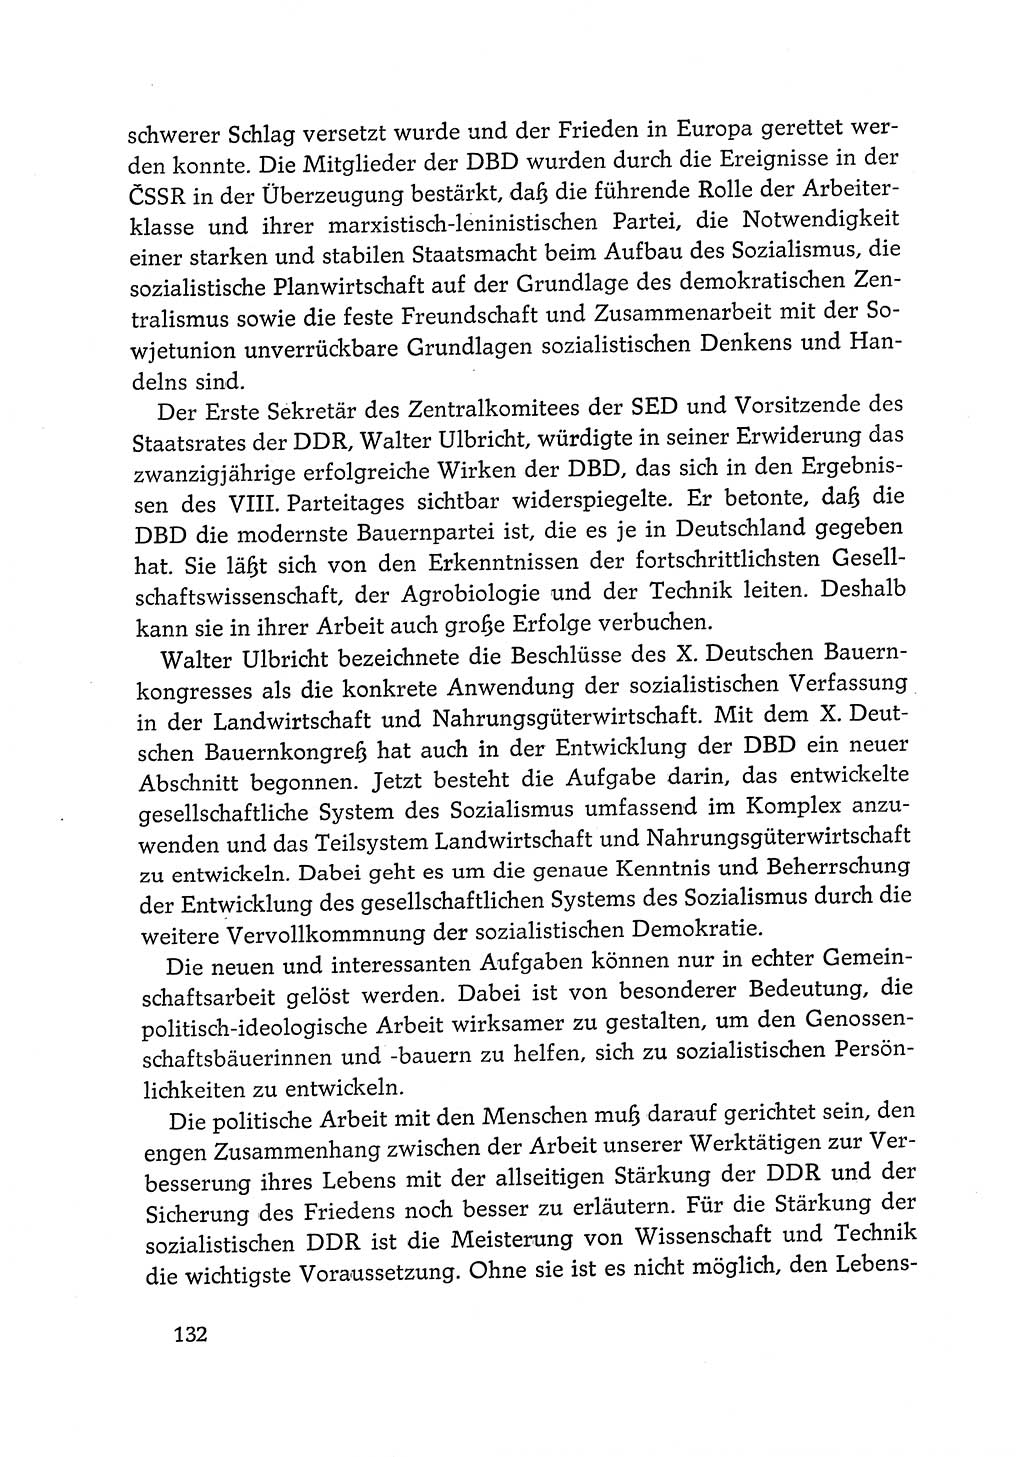 Dokumente der Sozialistischen Einheitspartei Deutschlands (SED) [Deutsche Demokratische Republik (DDR)] 1968-1969, Seite 132 (Dok. SED DDR 1968-1969, S. 132)